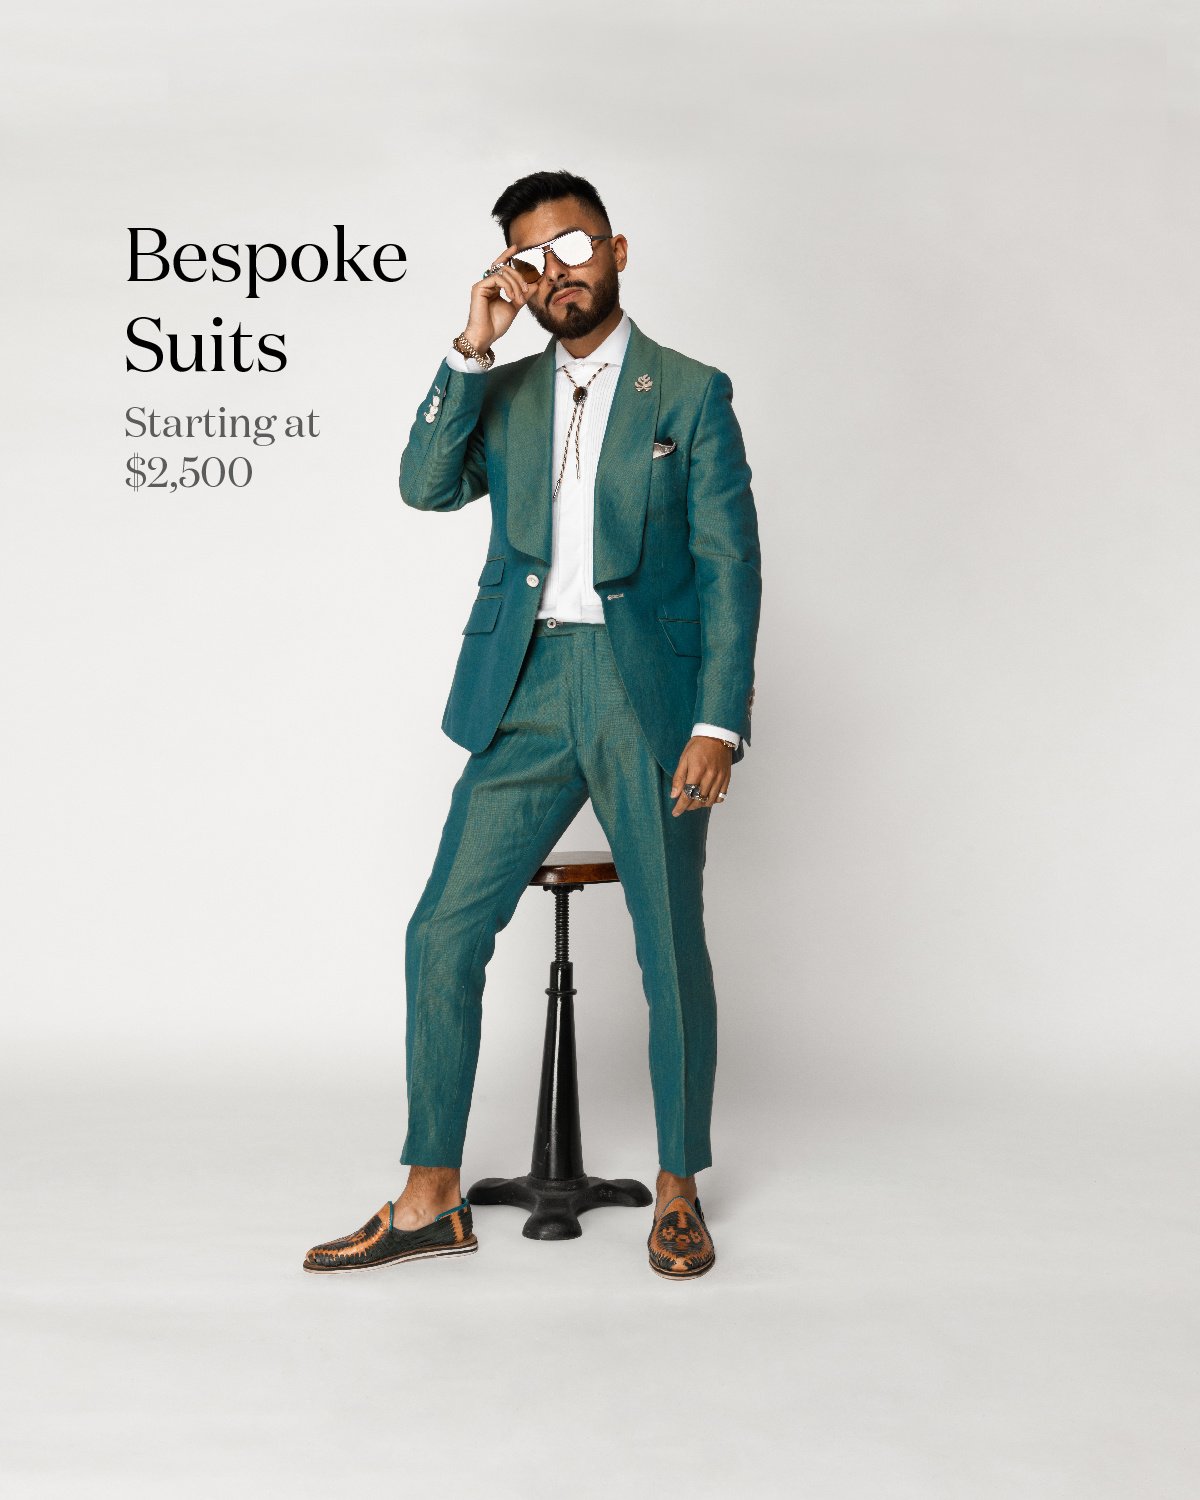 https://cdn.shoplightspeed.com/shops/617073/files/42596657/psc-bespoke-custom-suit-in-los-angeles.jpg